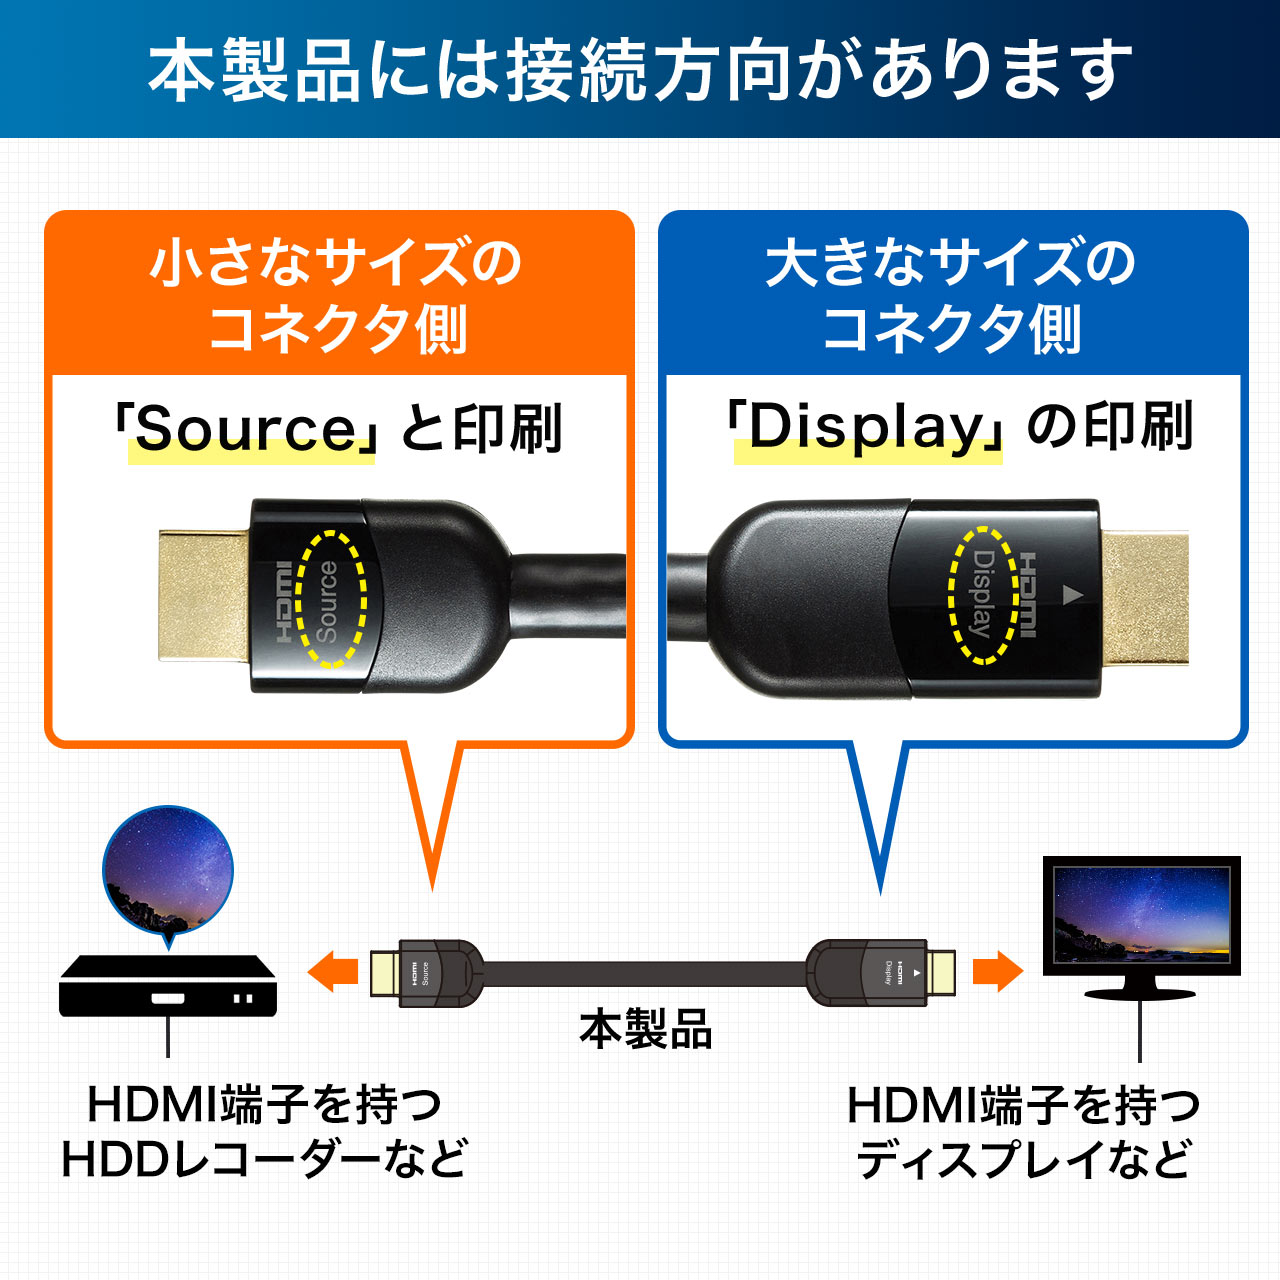 HDMIケーブル（イコライザ内蔵・4K/60Hz・18Gbps伝送対応・HDMI2.0準拠